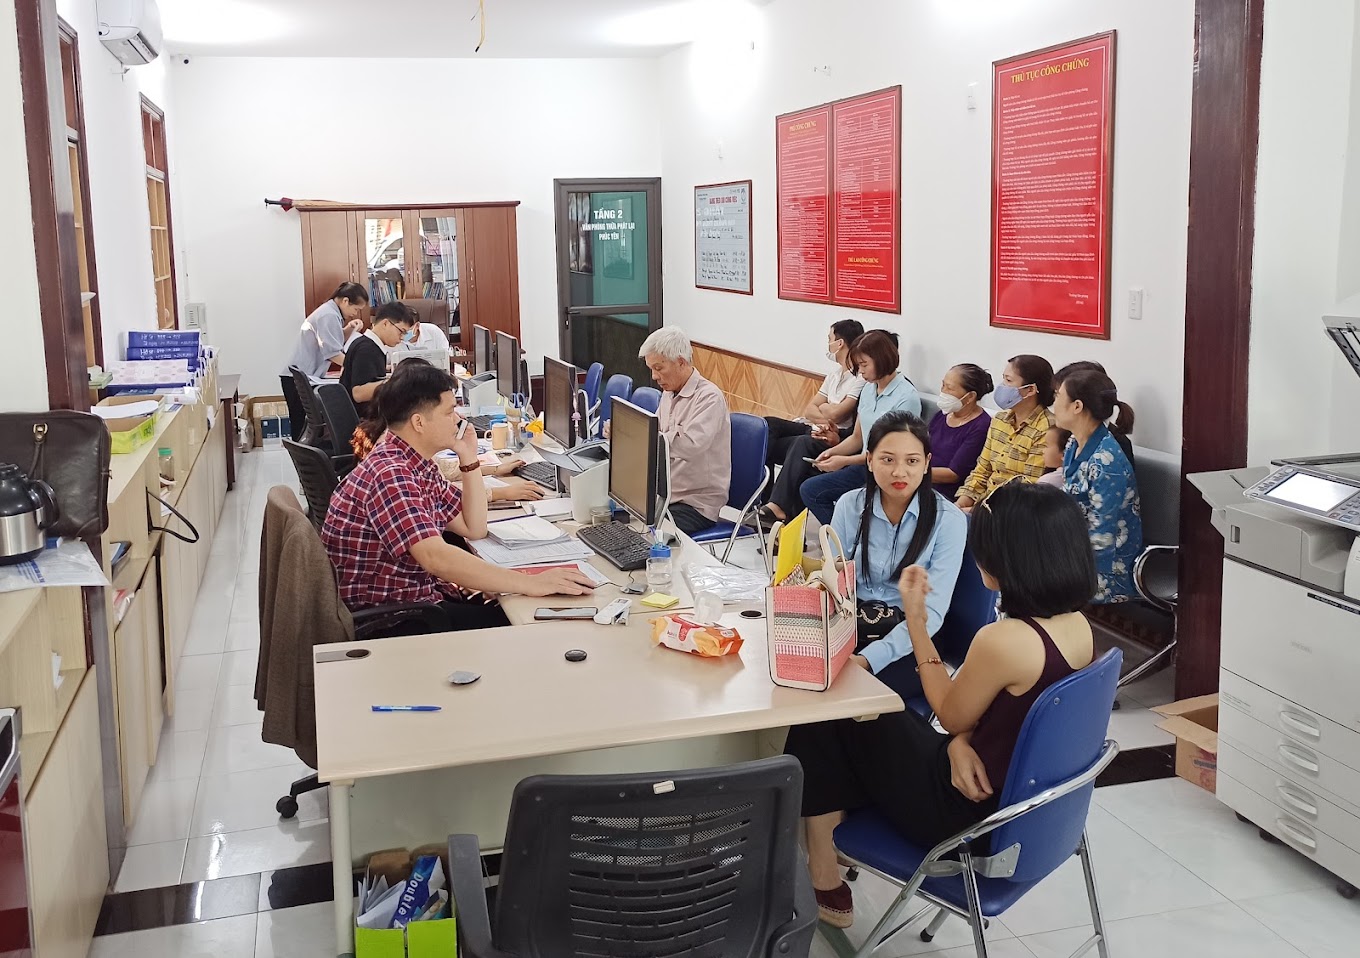 Liên hệ Văn phòng công chứng Lê Thùy Trang thông tin địa chỉ số điện thoại